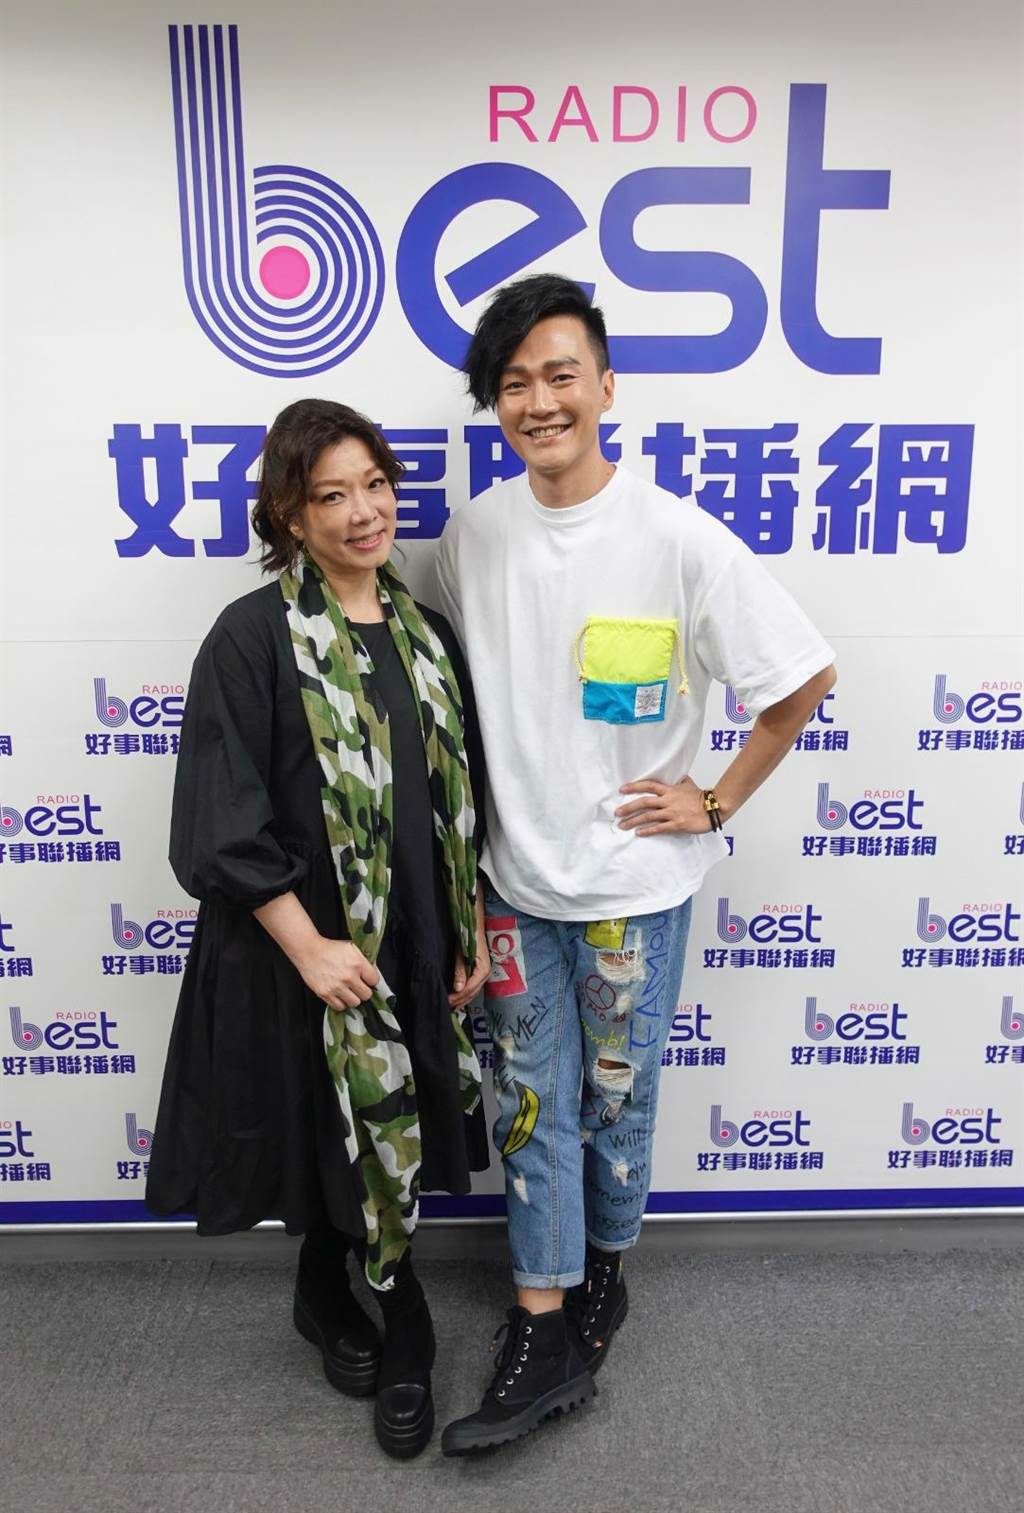 趙詠華、林俊逸3/27將在台北國際會議中心舉辦「華逸登場」演唱會。(好事聯播網提供)